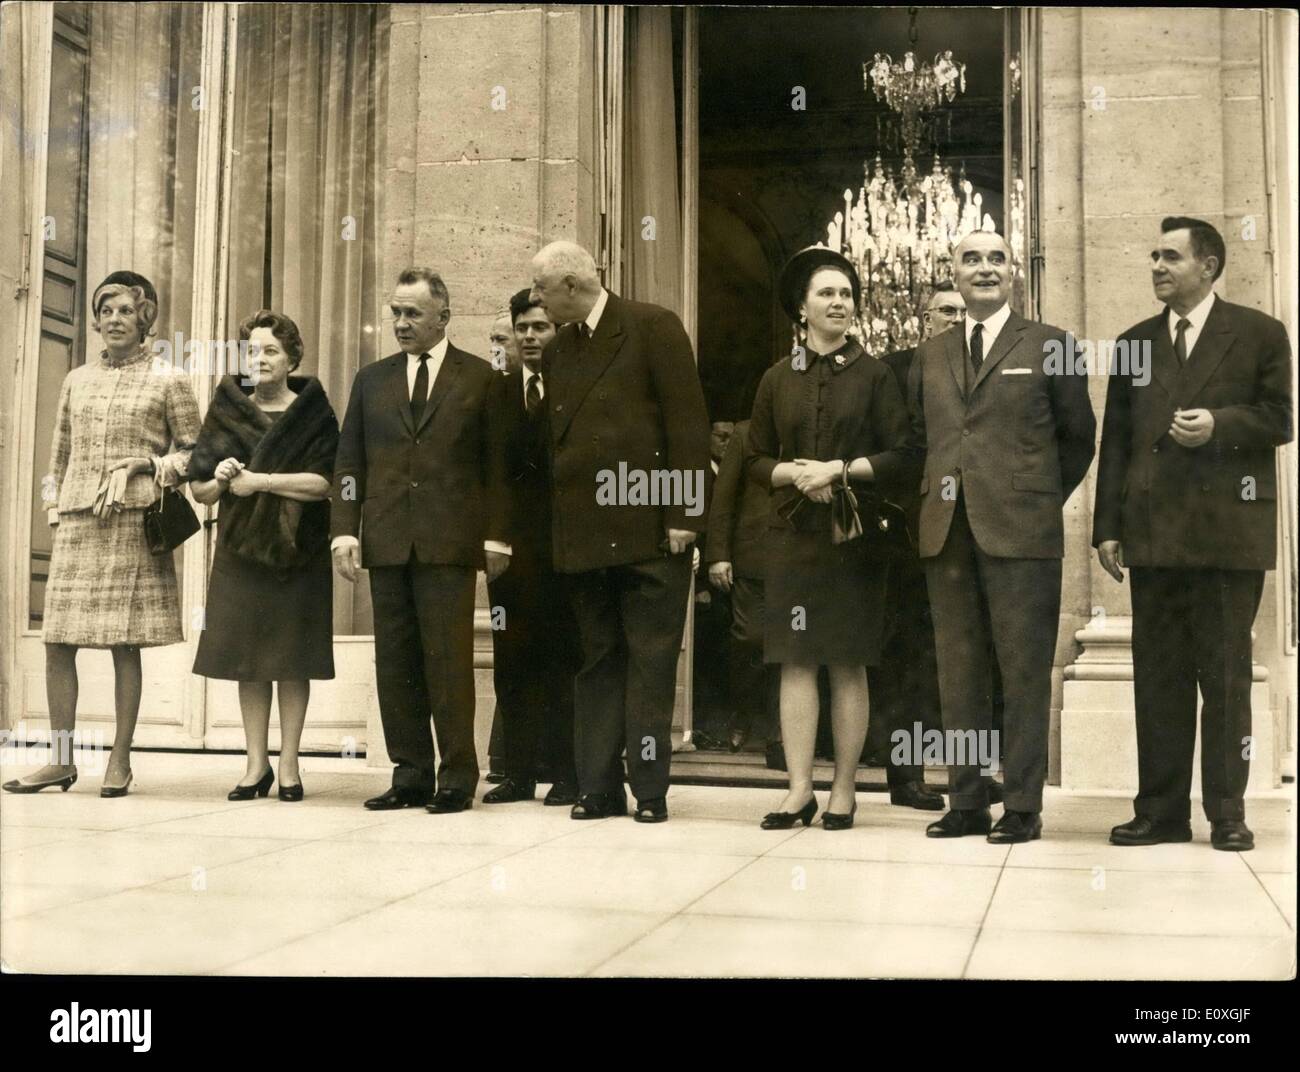 Il 12 Dic. 1966 - Kosygin su nove giorni in Francia: premier sovietico Alexei KOSYGIN arrivato a Parigi per nove giorni di visita in Francia: raffigurato su i passi dell'Elysee Palace da L.A R. : Mme Pompidou, moglie del Primo Ministro francese, Mme de Gaulle, Kosygin, De Gaulle, Ludmilla Gvichiani (Kosygin della figlia che accompagna il suo padre Mme Kosygin essendo malato); Il Primo Ministro Pompidou e Andrei Gromyko, il Ministro degli esteri sovietico. Foto Stock